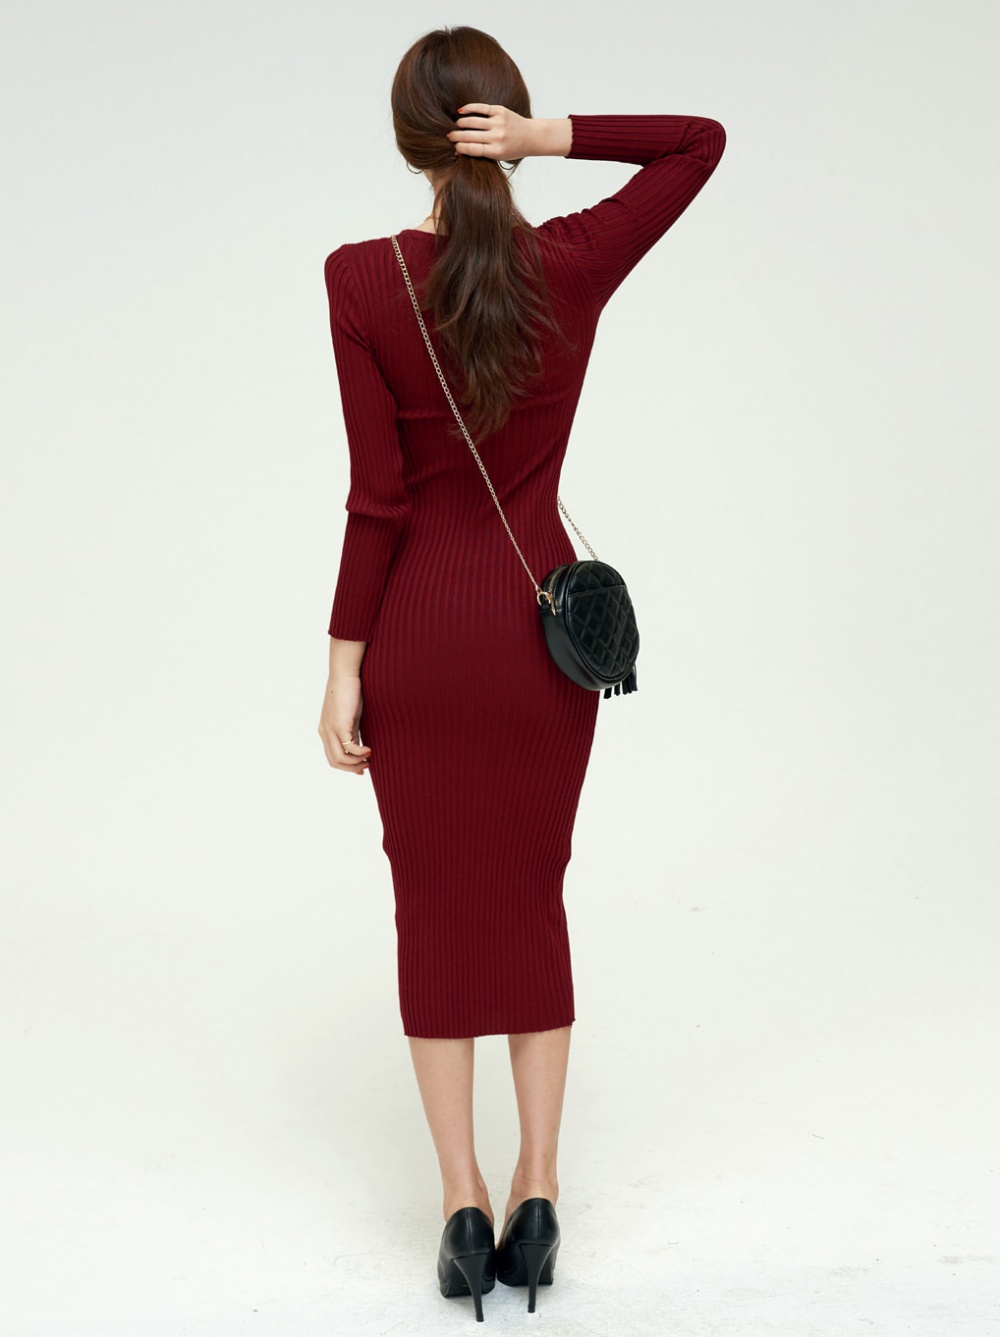 Long V-neck overcoat knitted dress for women